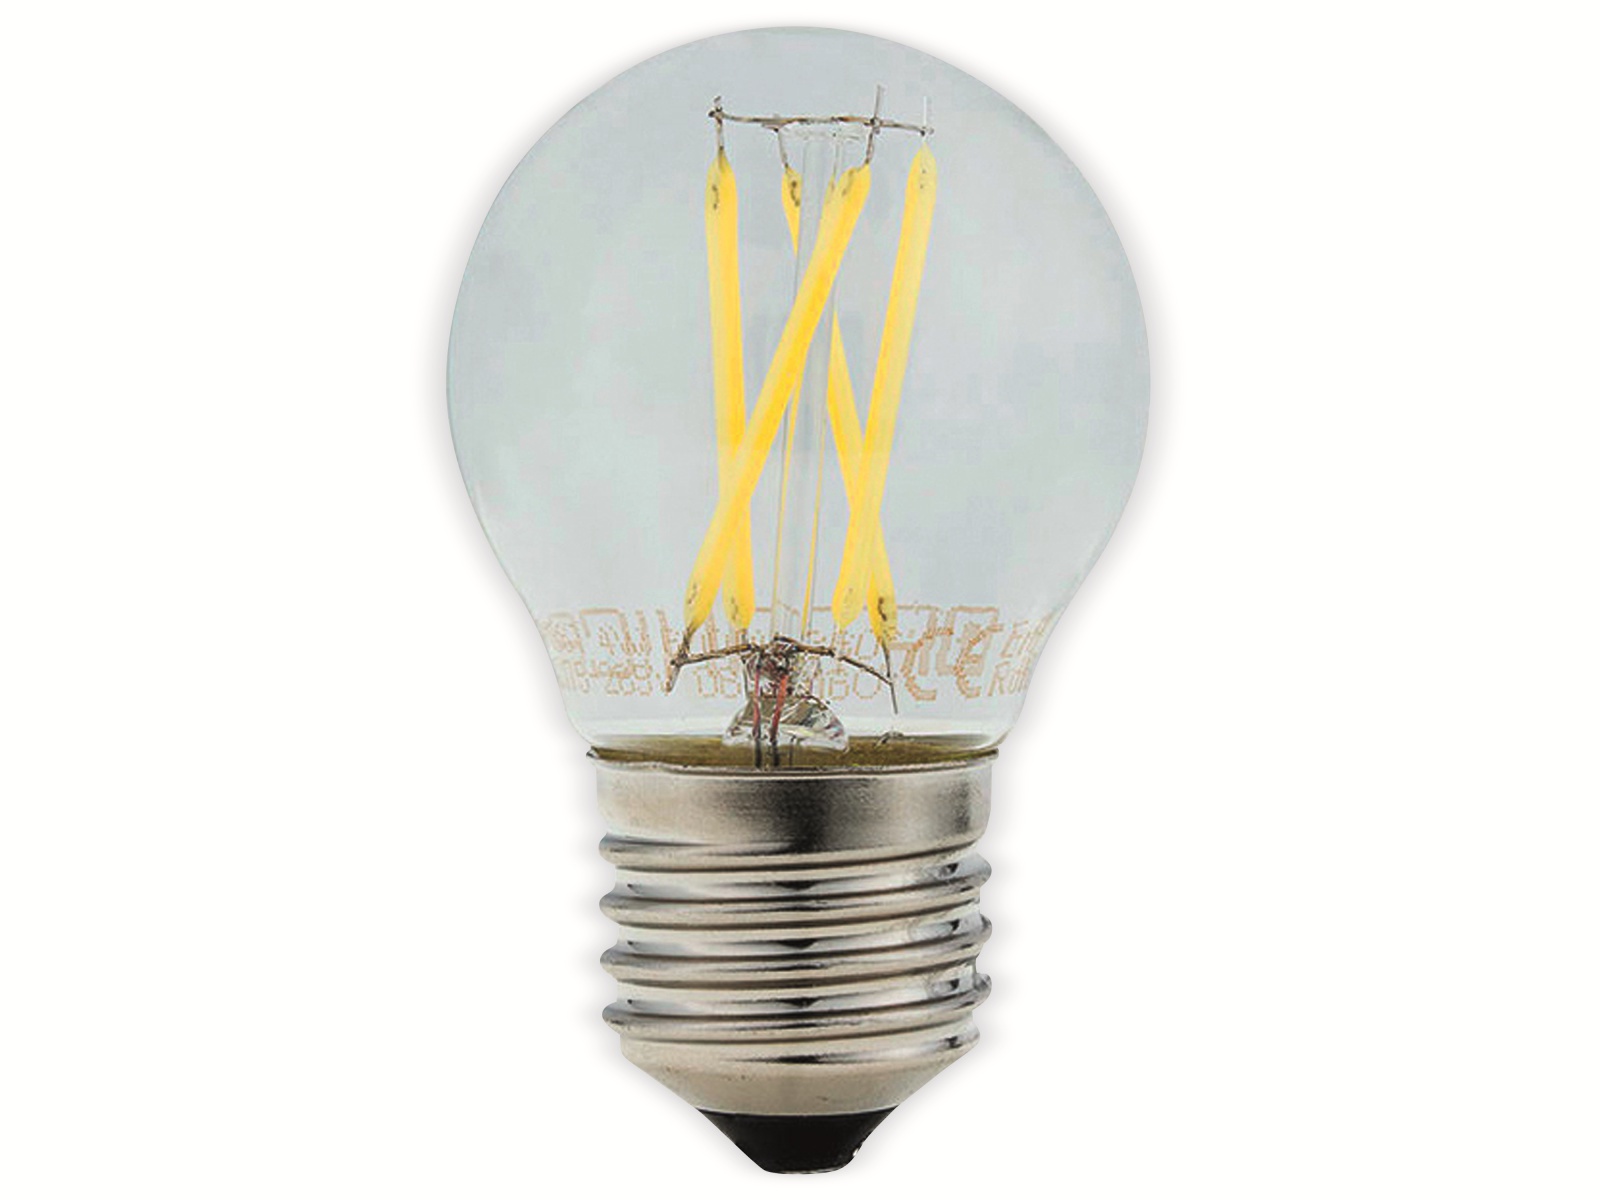 OPTONICA LED-Lampe 1867 Fil, E27, G45,EEK F, 4W, 400lm, 6000K